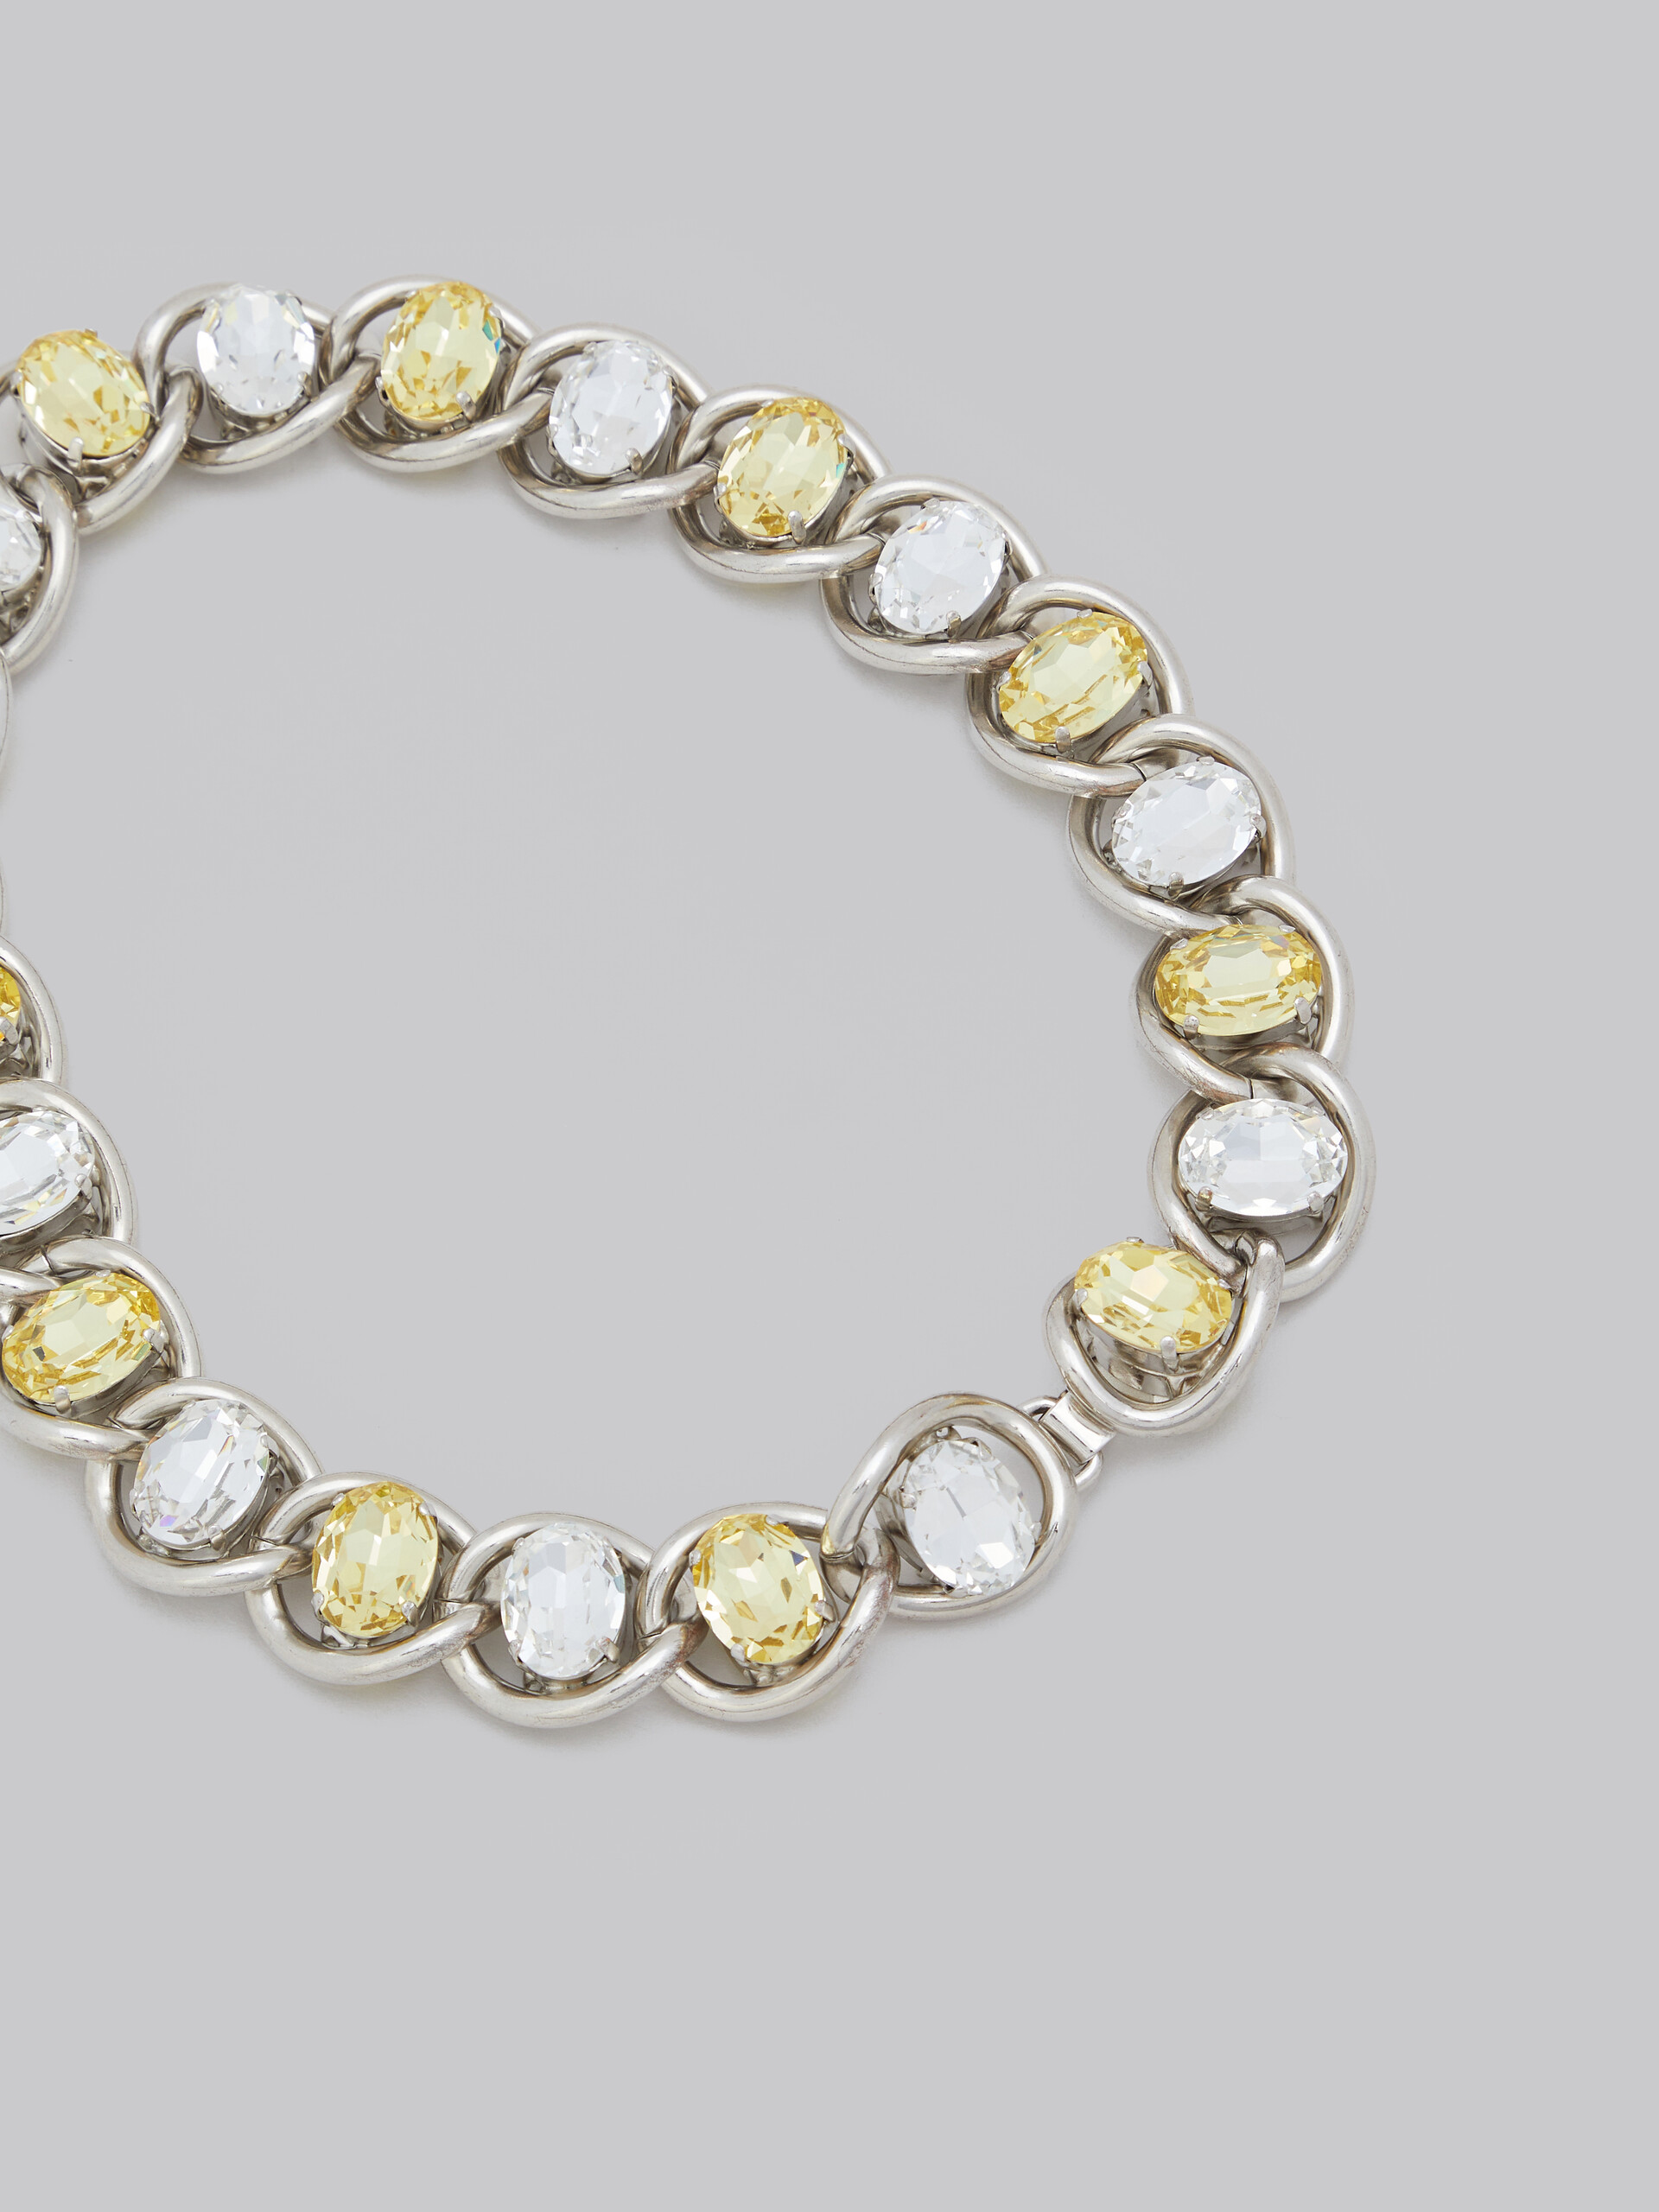 Halskette in Transparent und Gelb mit Strass - Halsketten - Image 4